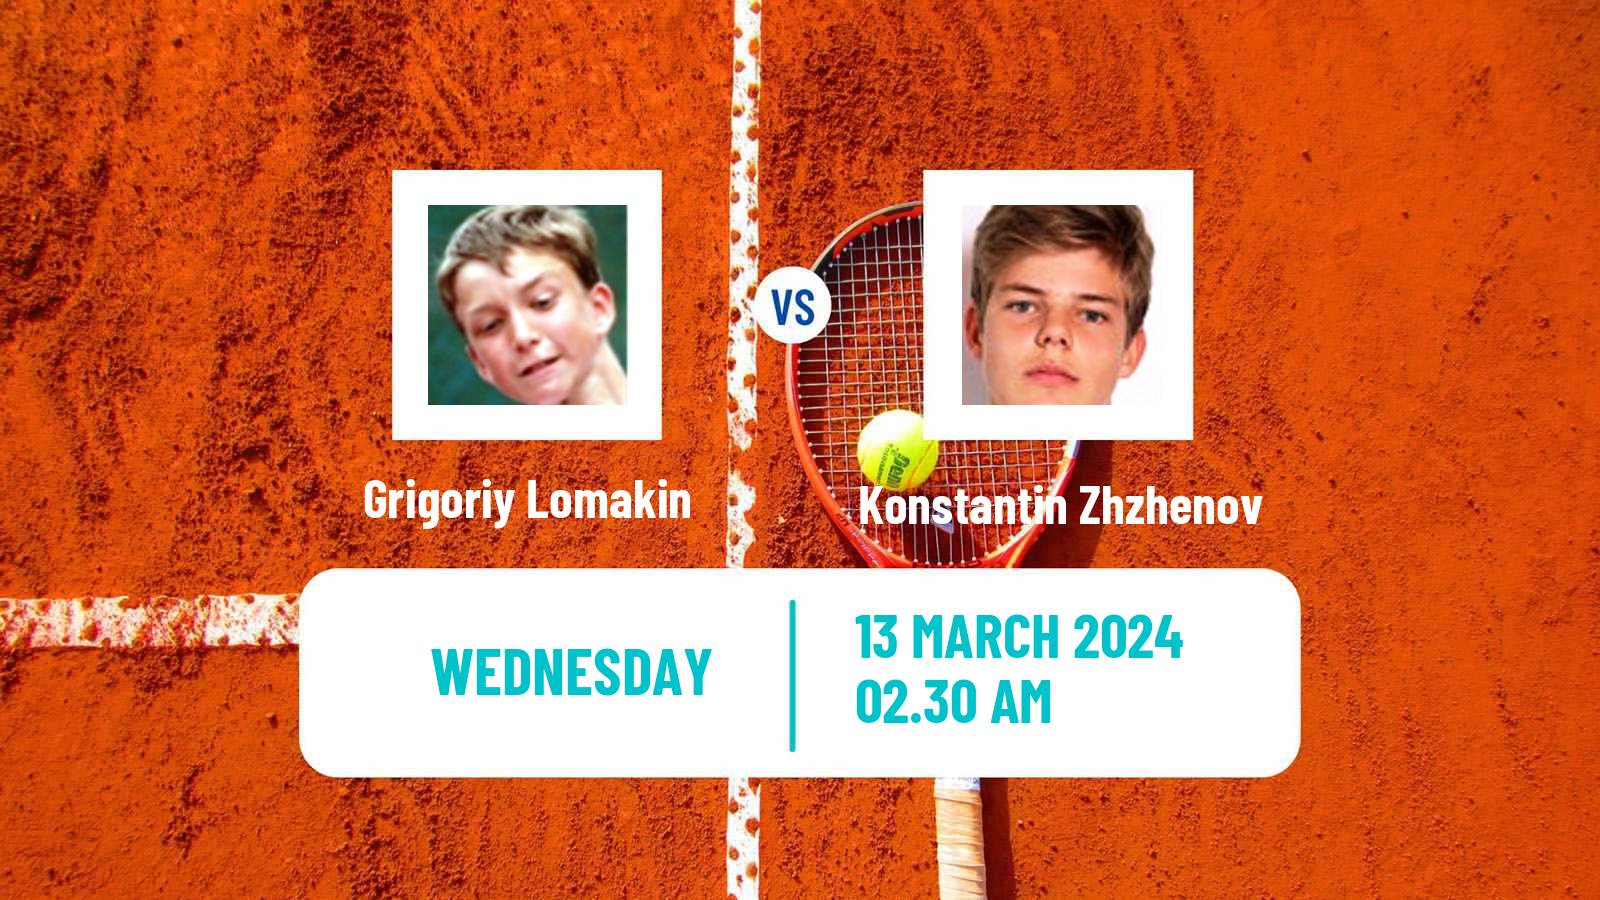 Tennis ITF M15 Aktobe 2 Men Grigoriy Lomakin - Konstantin Zhzhenov